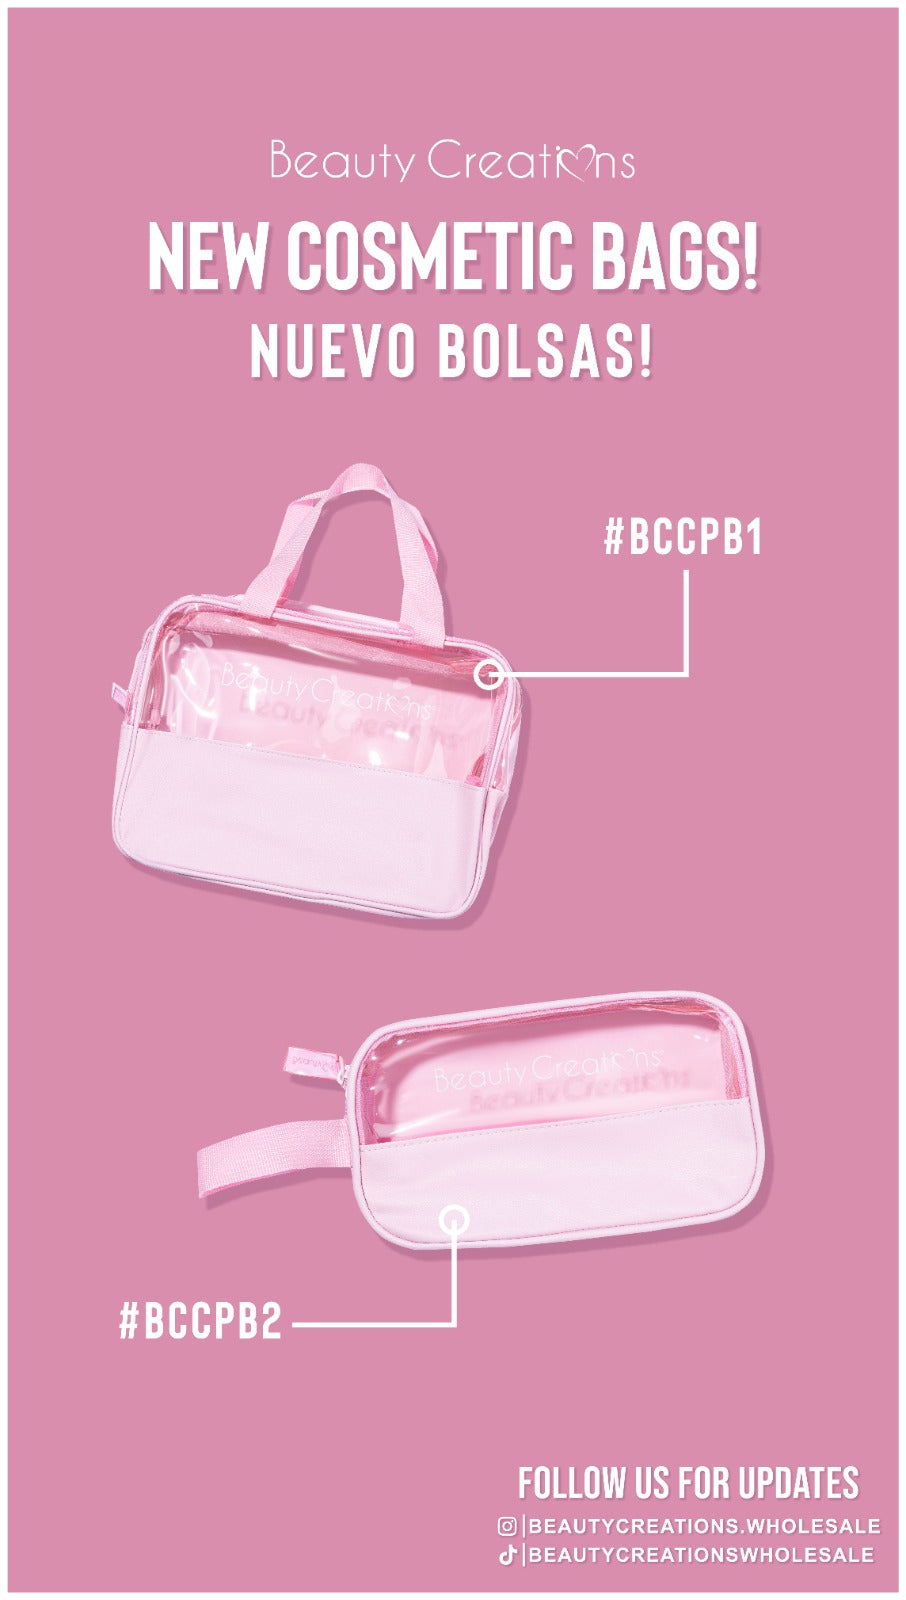 #BCCPB1 BC Large Makeup Bag